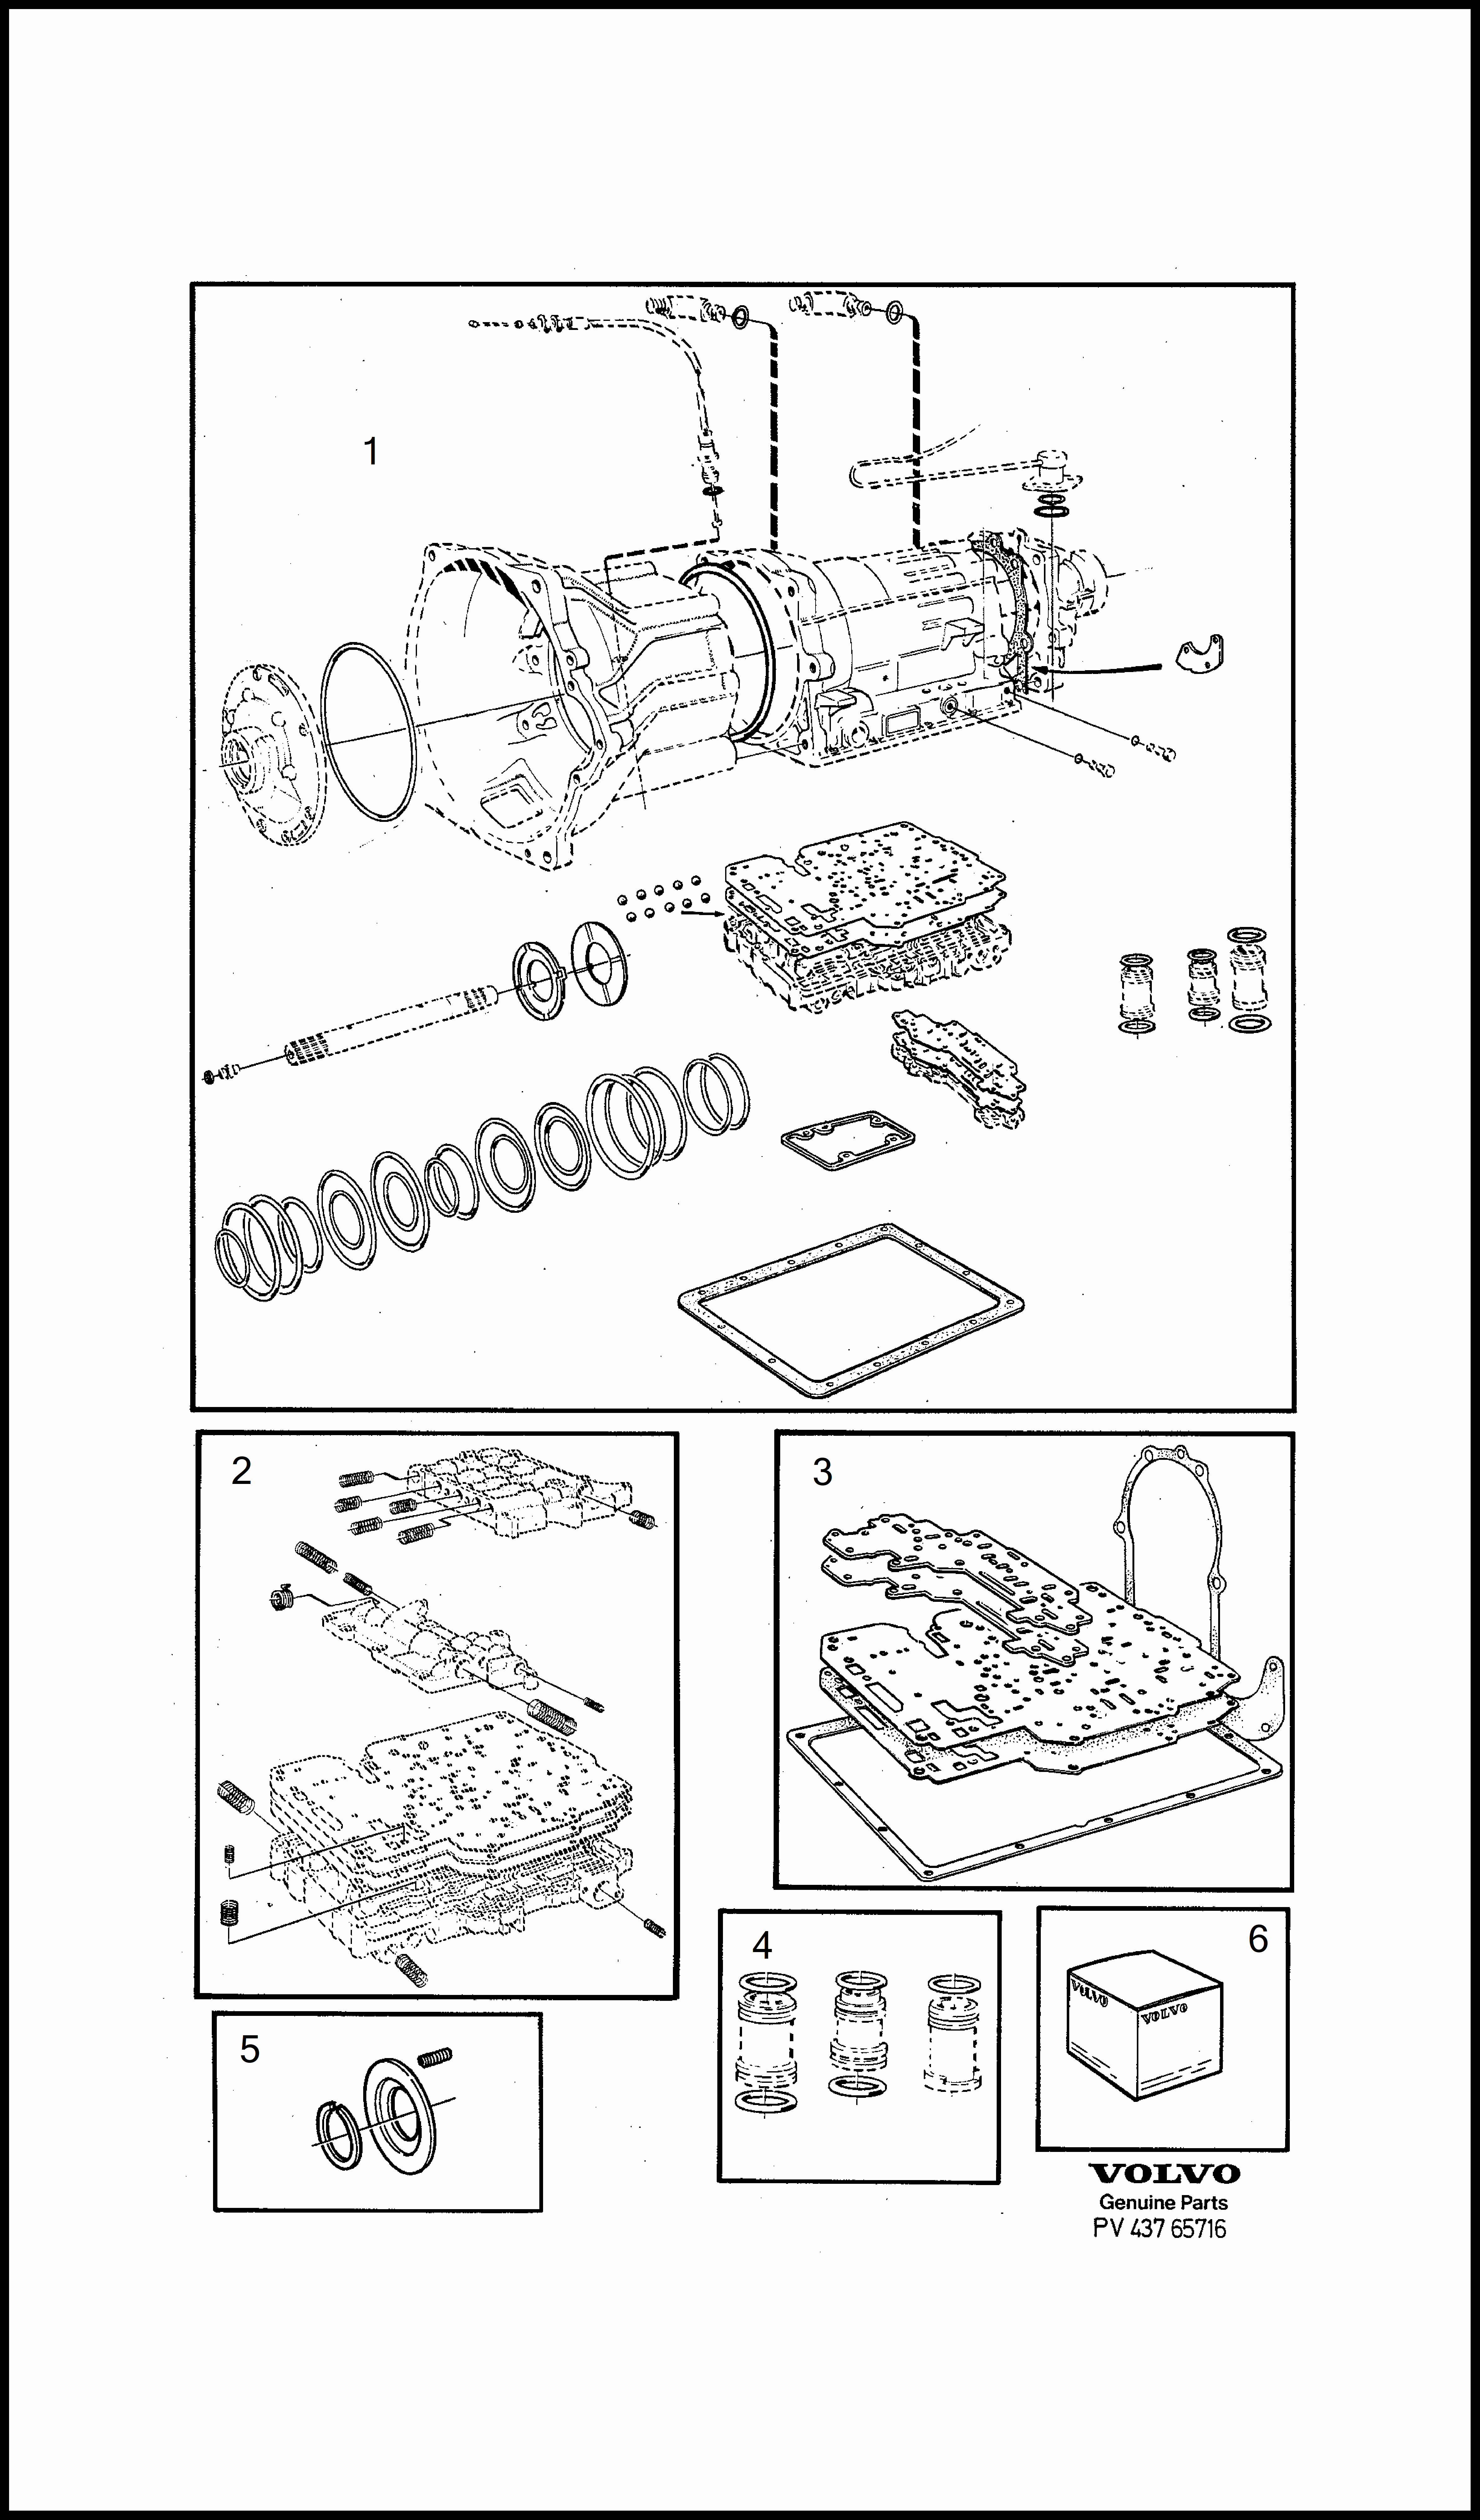 repair kits for Volvo 240 240